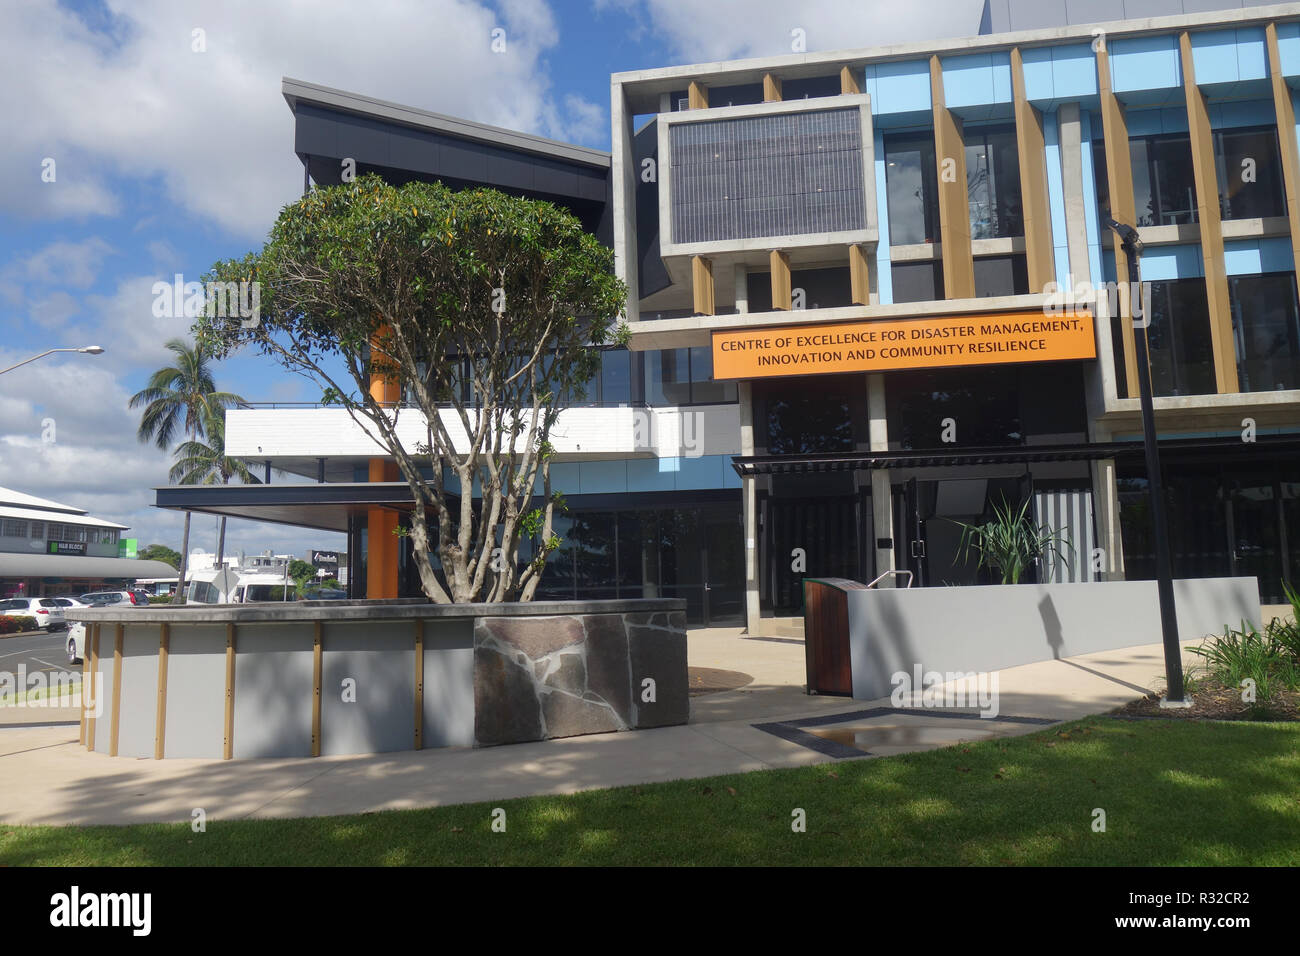 Centro di eccellenza per la gestione dei disastri, innovazione e resilienza comunitaria, Yeppoon, Queensland, Australia. N. PR Foto Stock